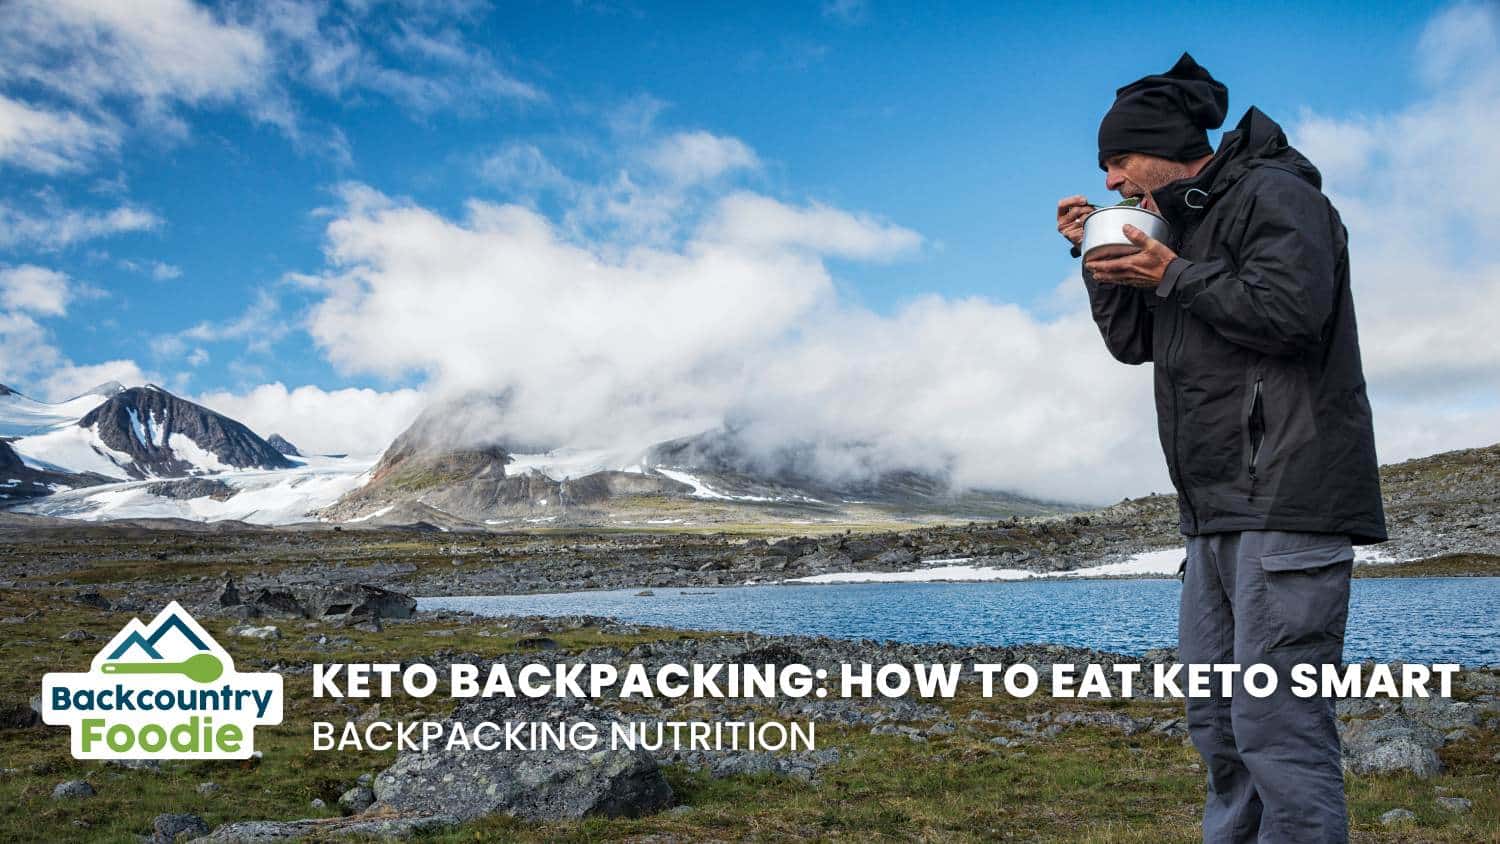 Keto Backpacking How to Eat Keto Smart blog thumbnail image